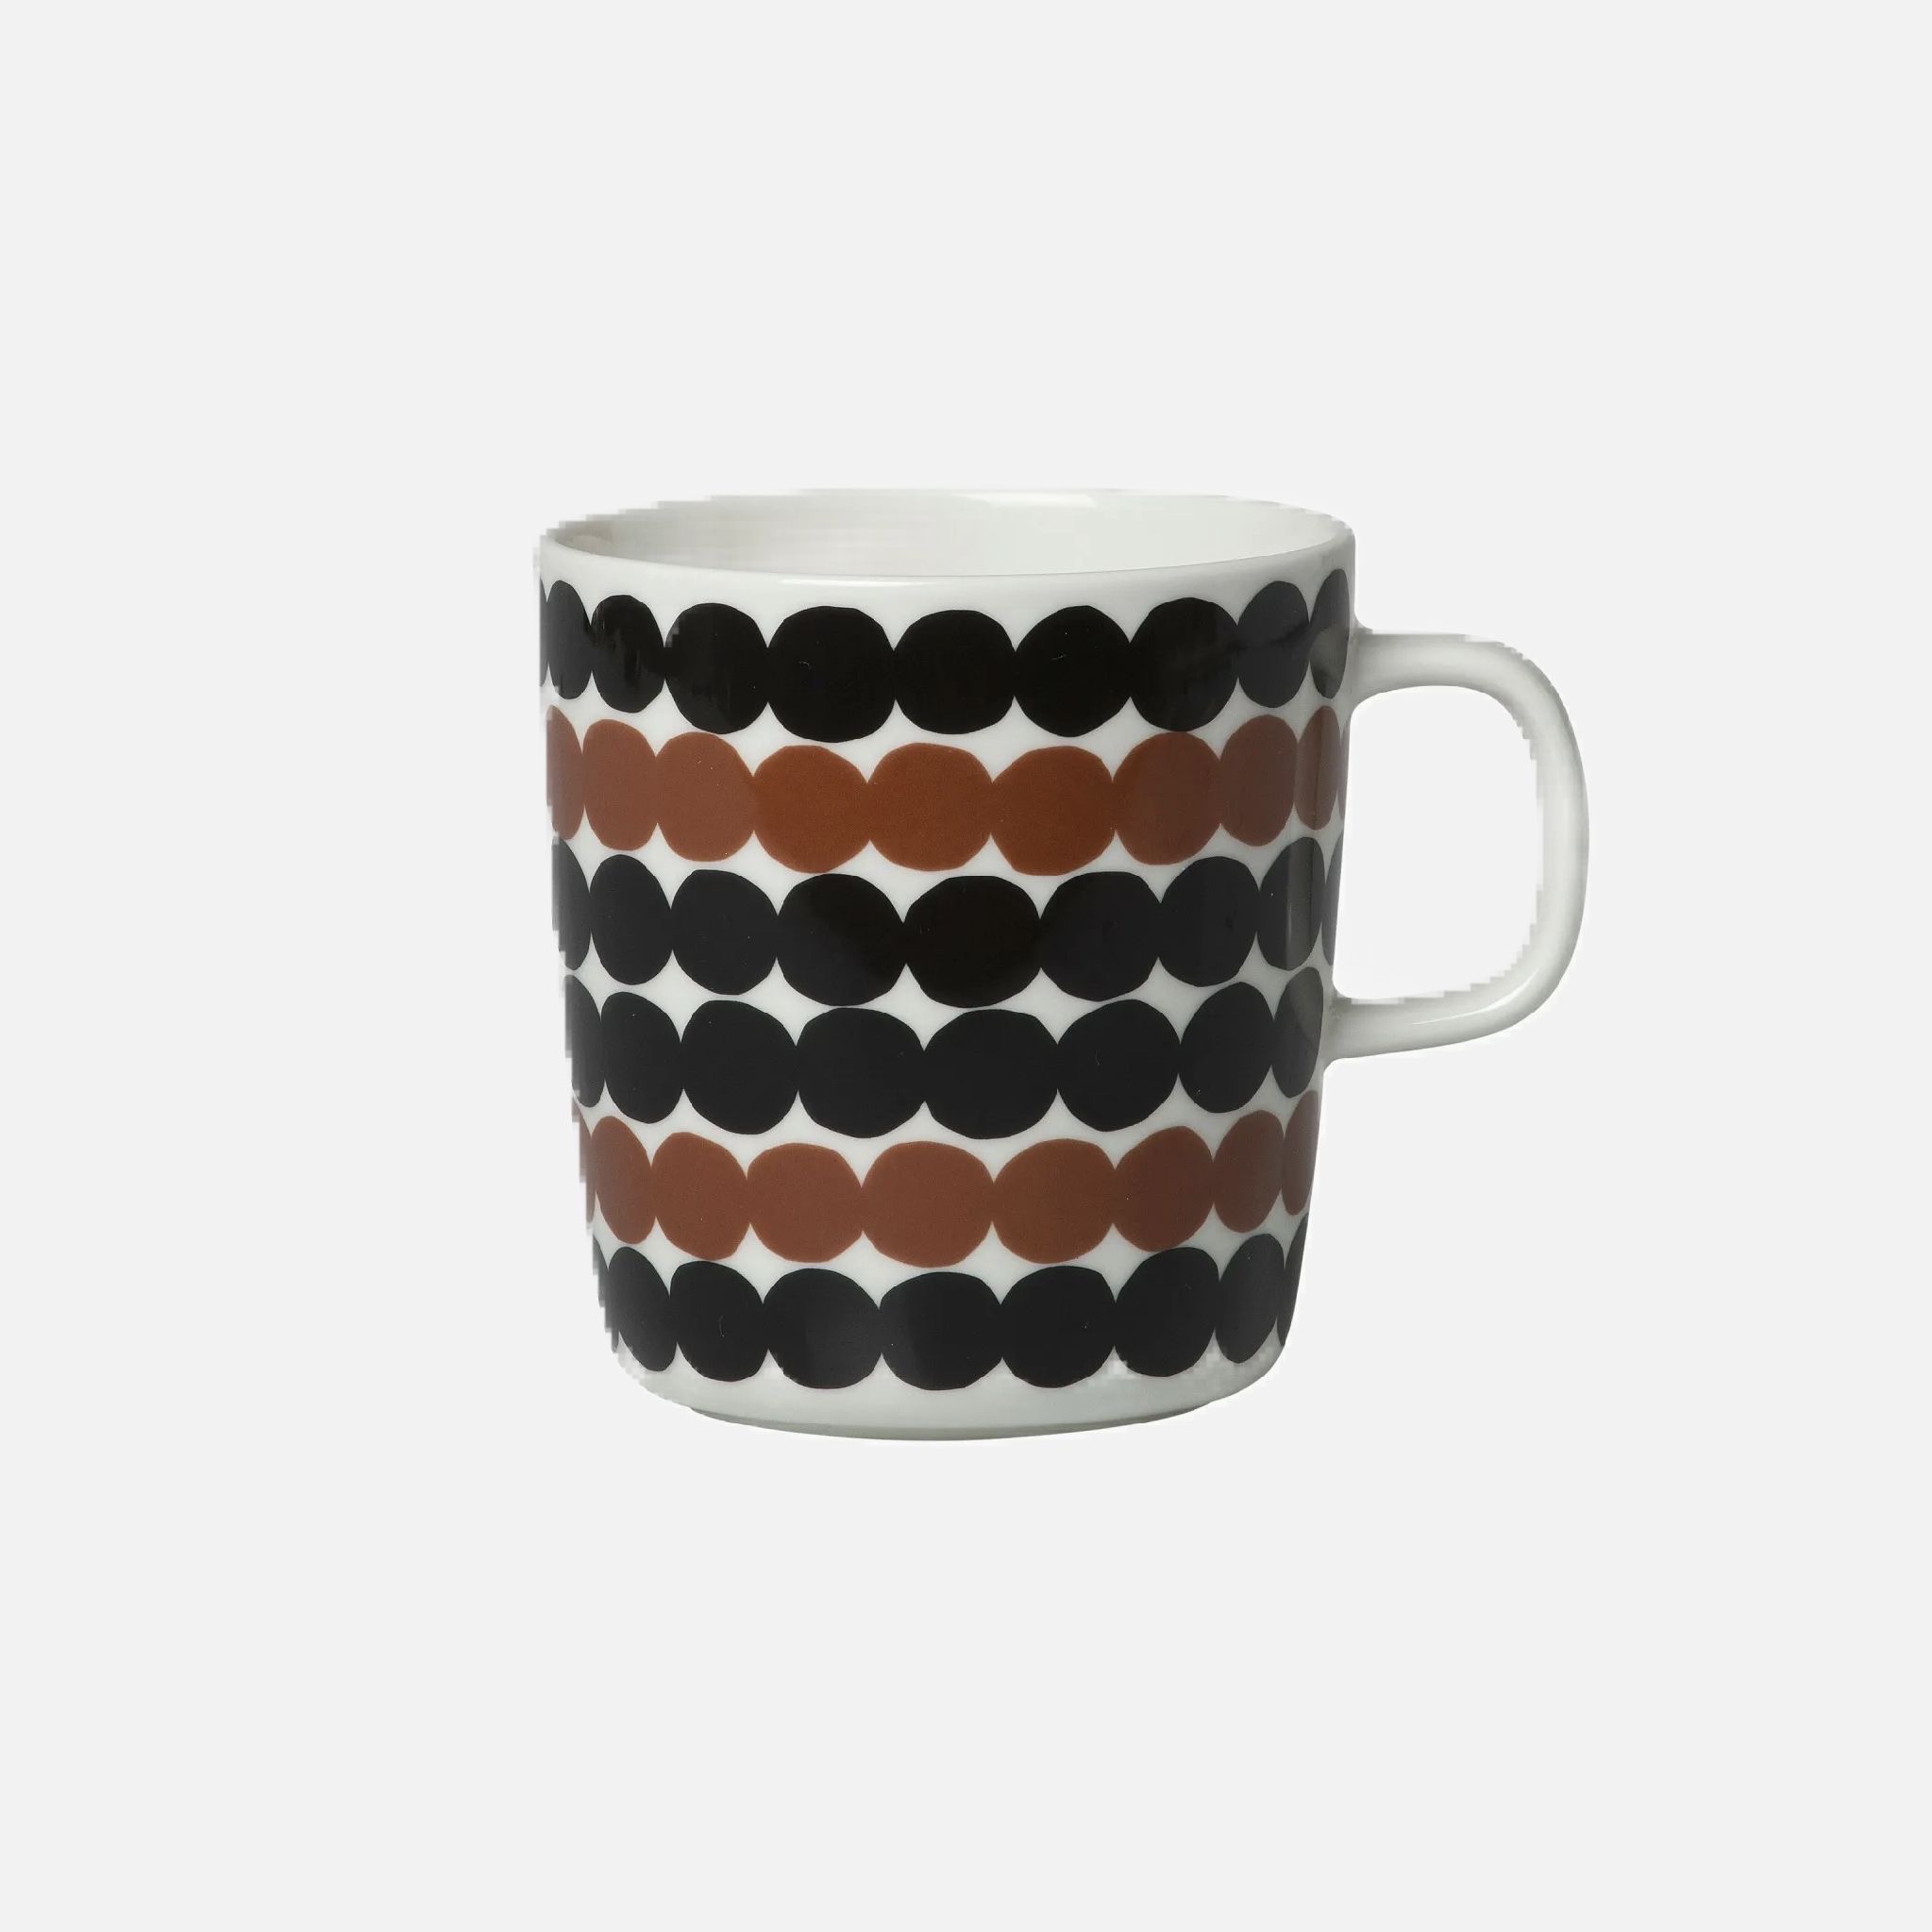 Rasymatto Mug 2,5dl black/brown